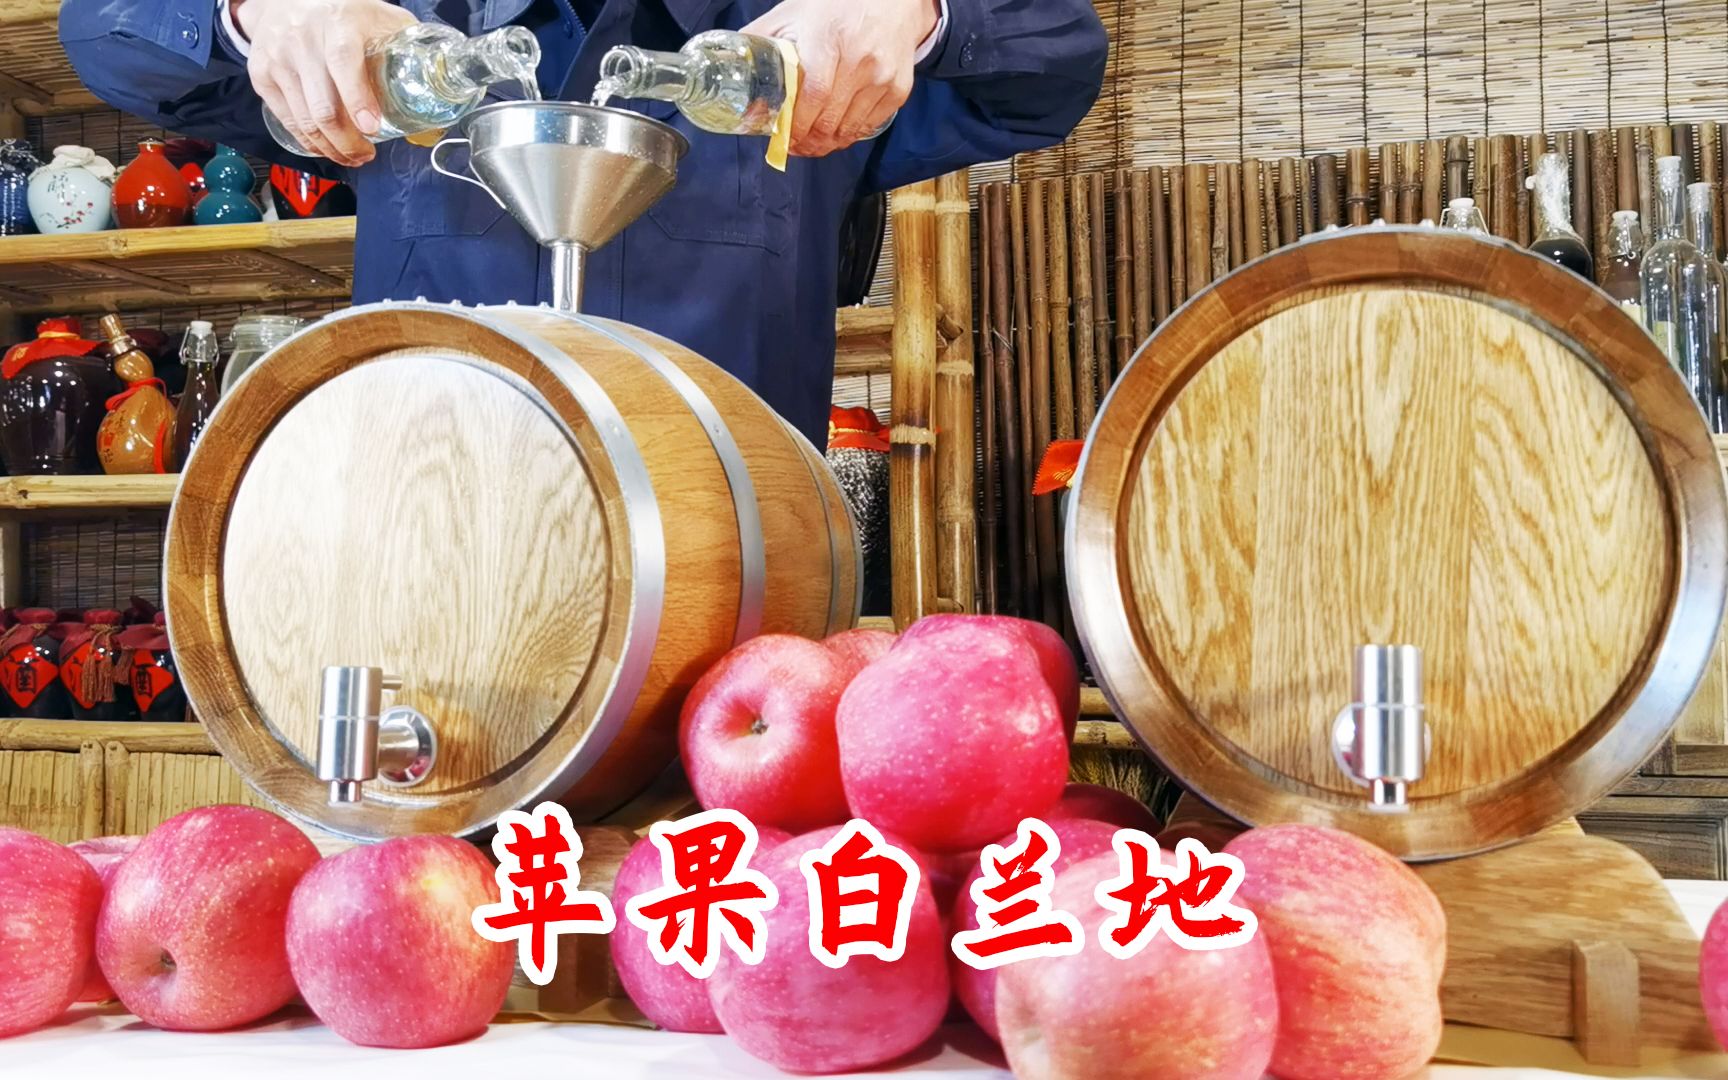 自酿苹果酒,苹果如何泡酒详细解述自酿方法 - 哔哩哔哩